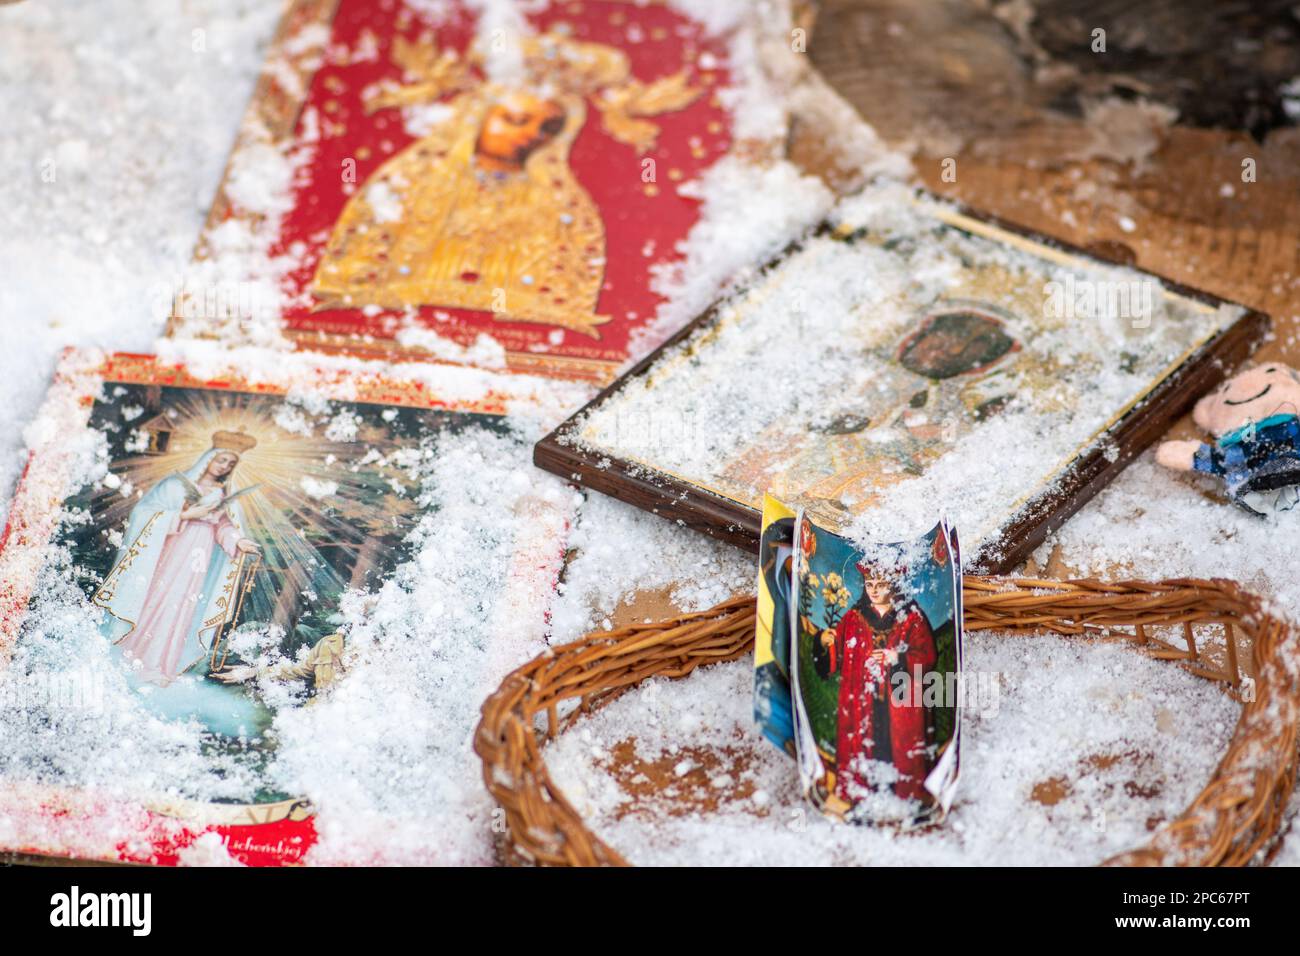 Imágenes iconográficas sagradas de los santos y la Virgen María cubiertas por la nieve durante una nevada en un día de invierno helado Foto de stock